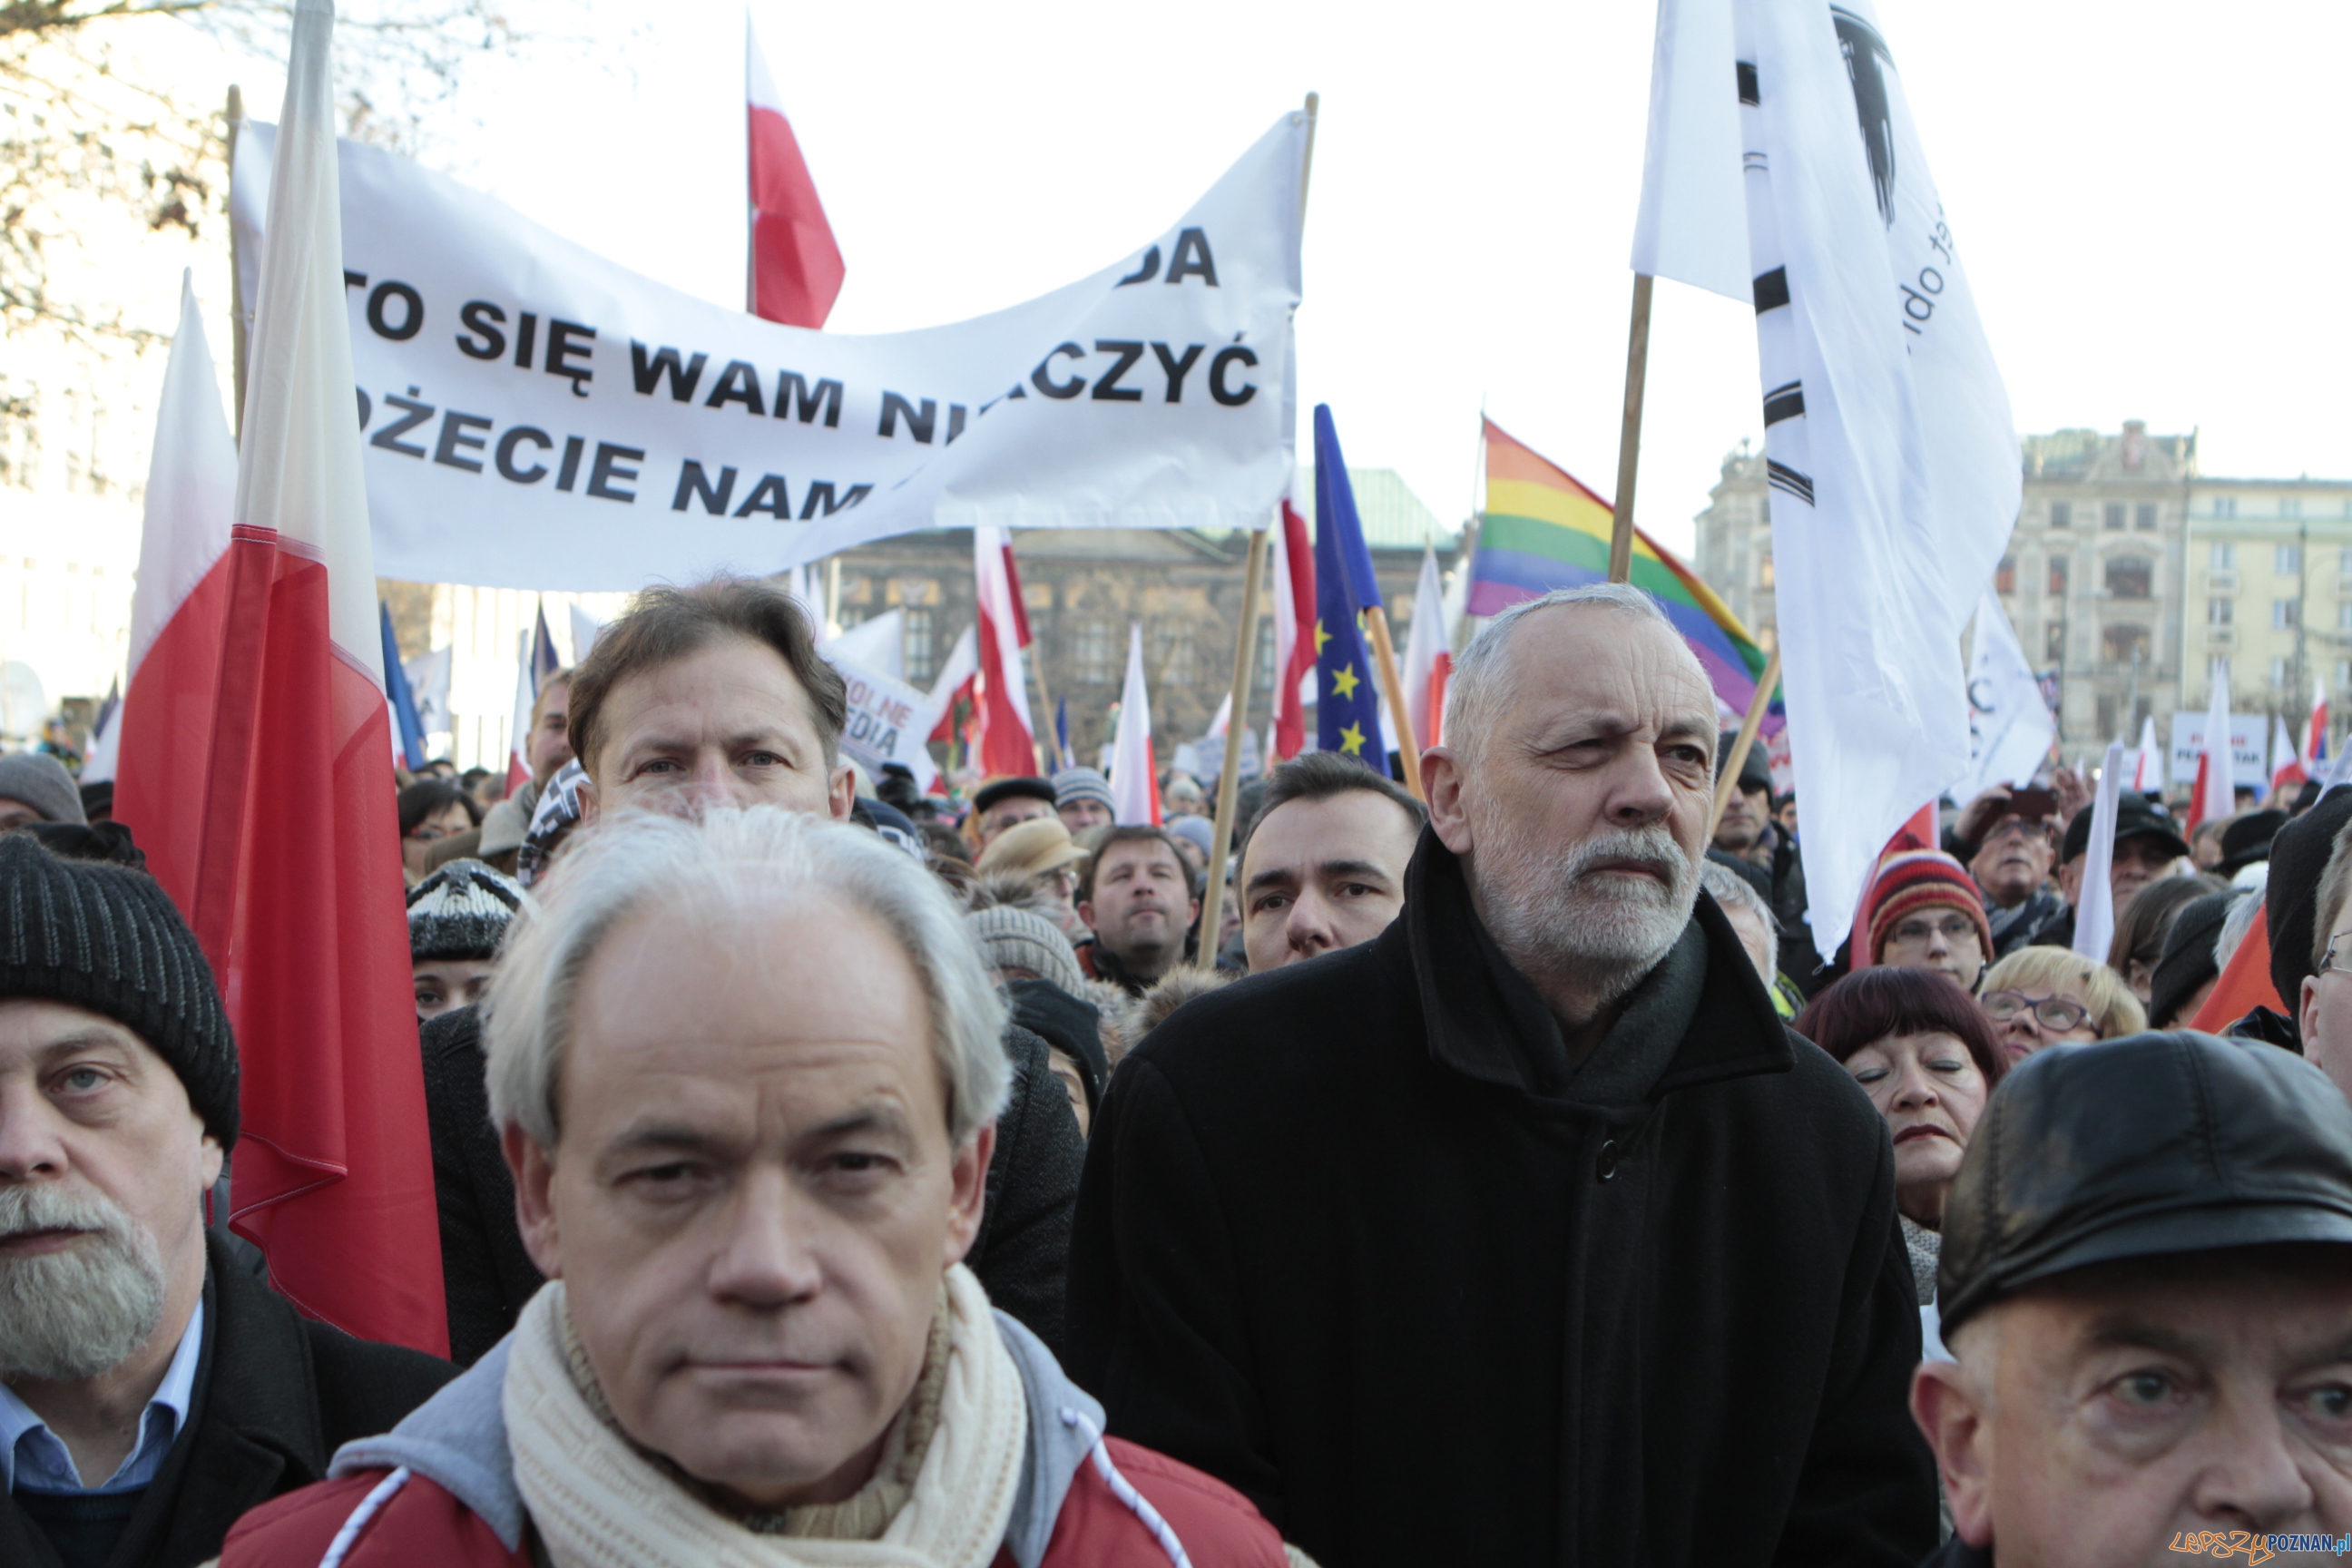 Szybka migawka - protest w obronie mediów  Foto: LepszyPOZNAN.pl / Pawel Rychter